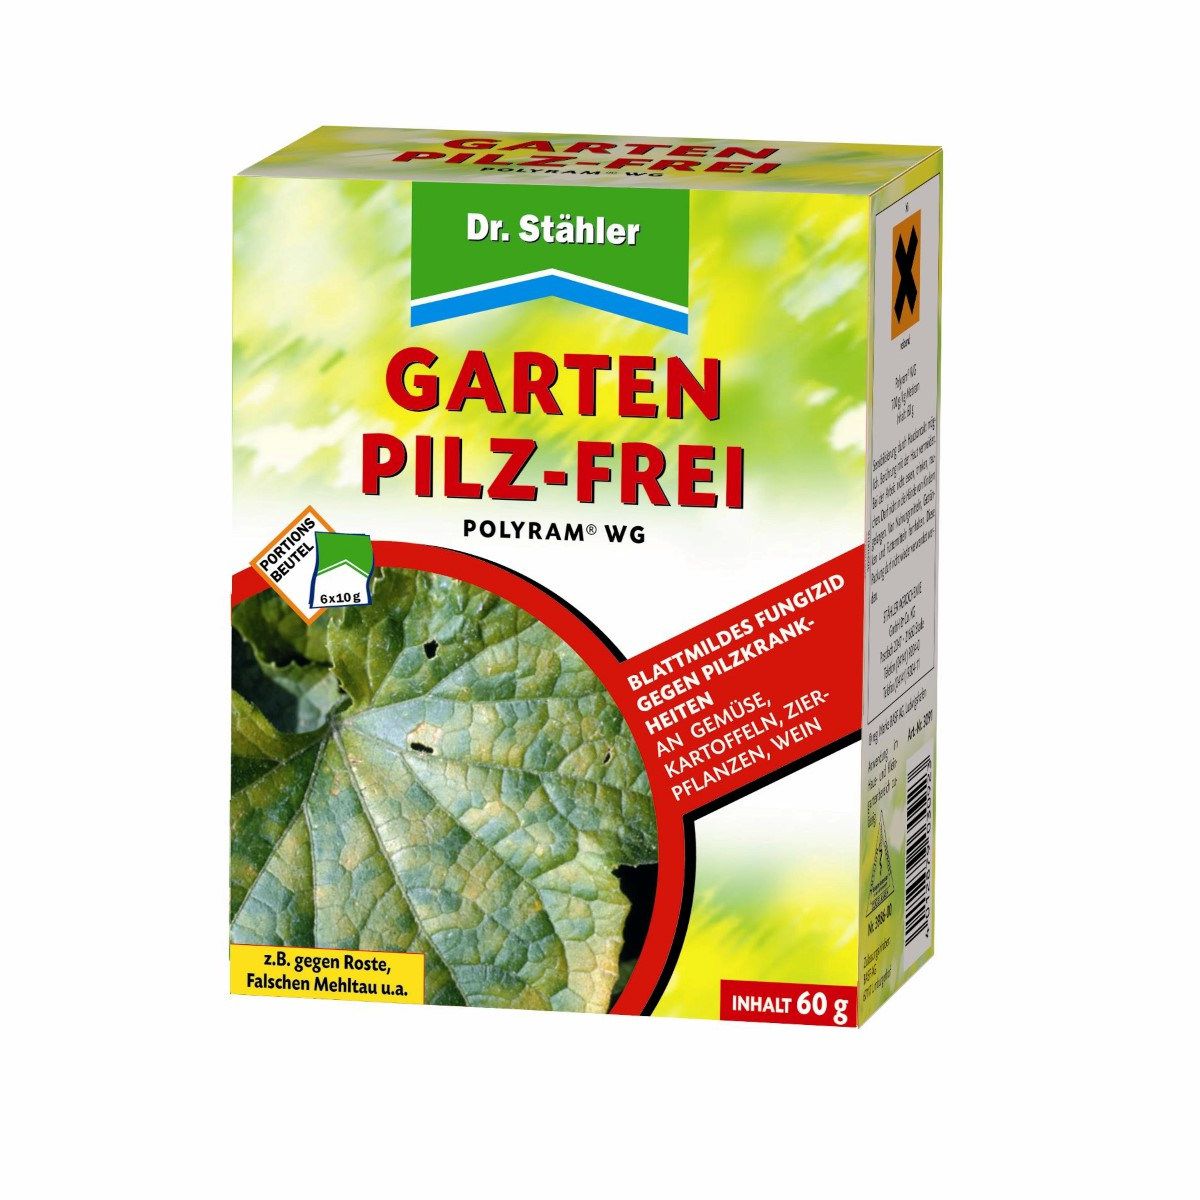 Dr. Stähler Polyram WG Garten Pilz-Frei 6 x 10 g 